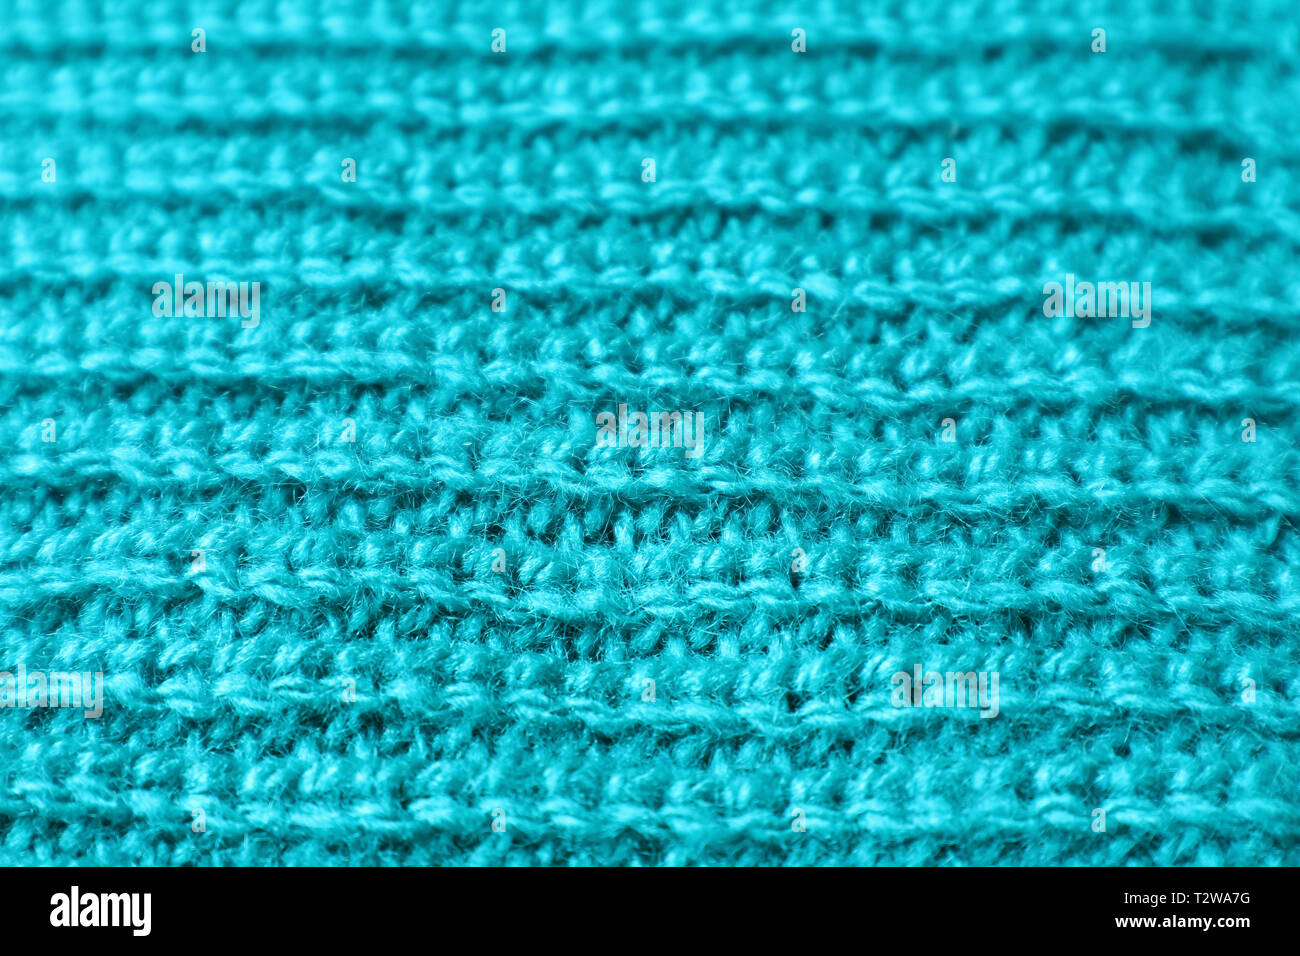 Geschlossen bis Textur von Türkis Blau Alpaka gestrickte Wolle Stoff in horizontalen Muster Stockfoto